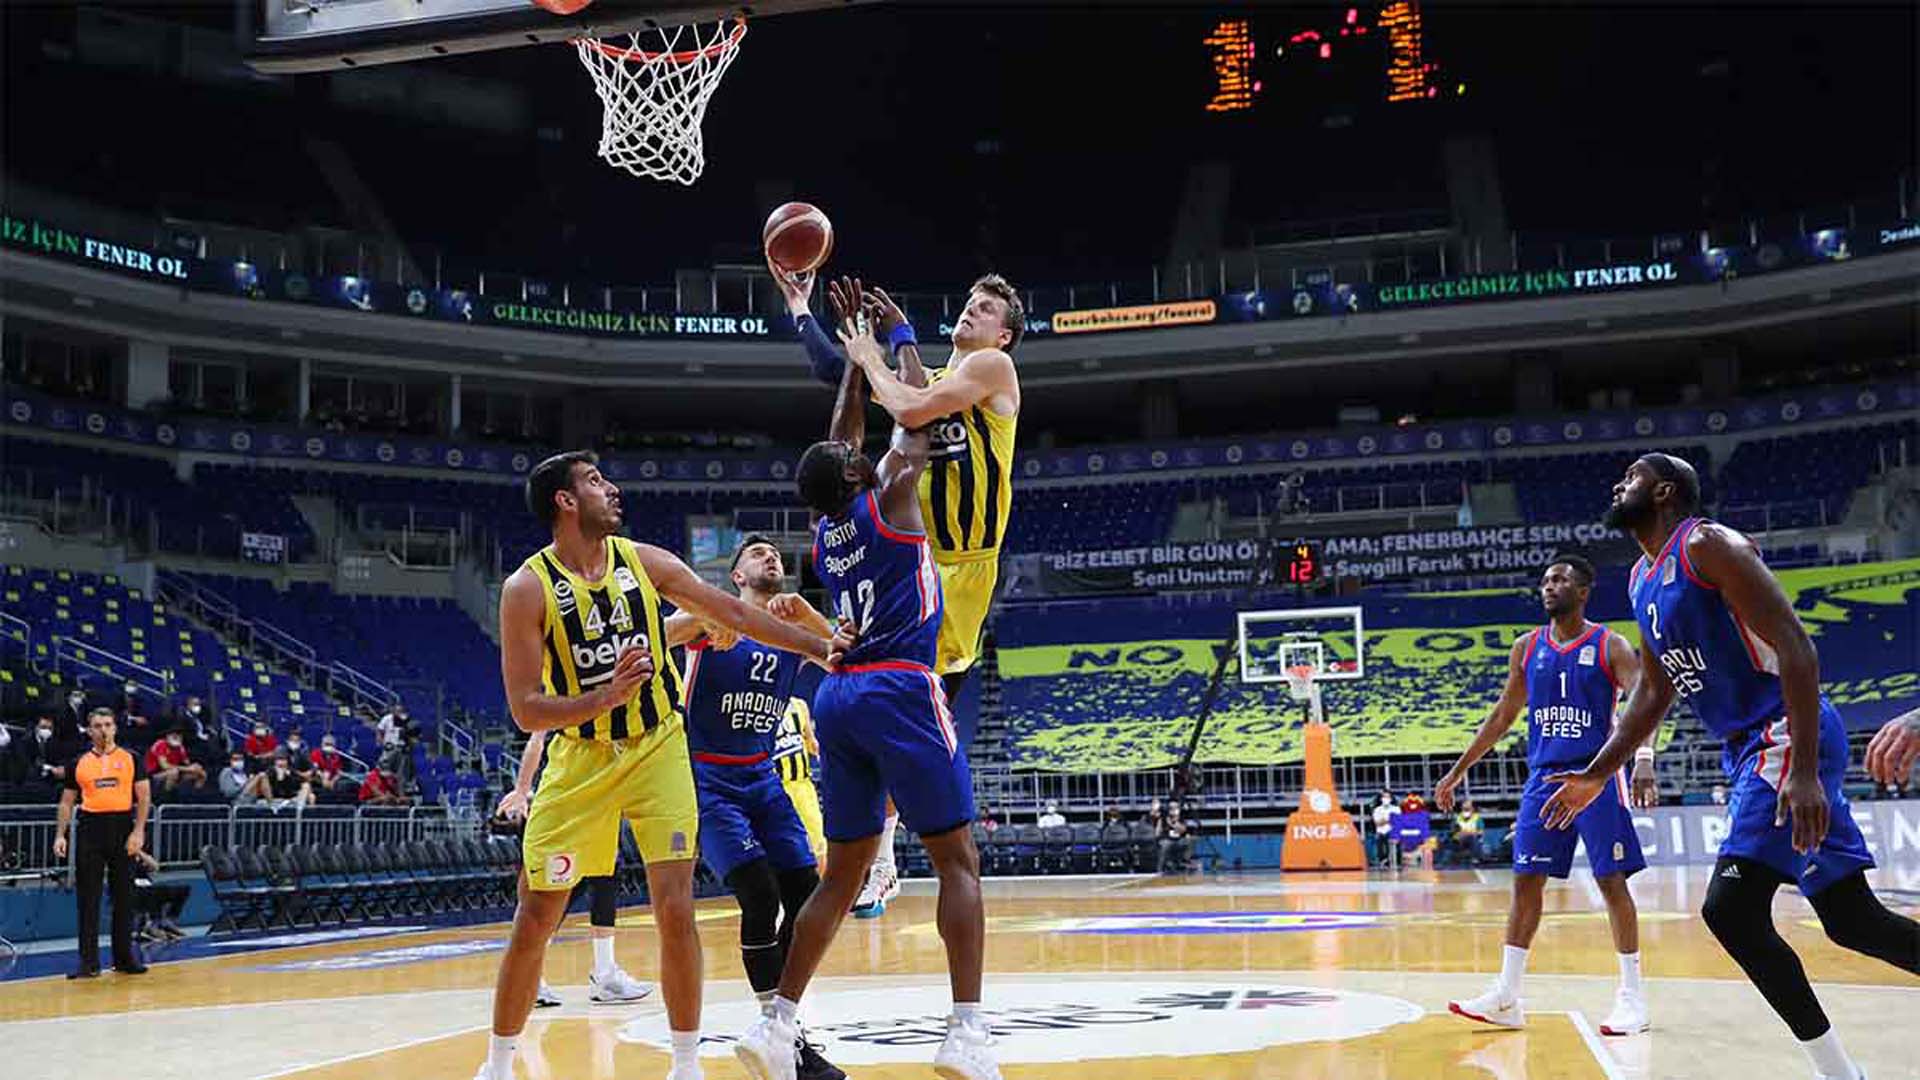 Fenerbahçe Beko - Anadolu Efes maçı canlı izle | Fenerbahçe Beko - Anadolu Efes final maçı TRT Spor canlı yayın izle linki